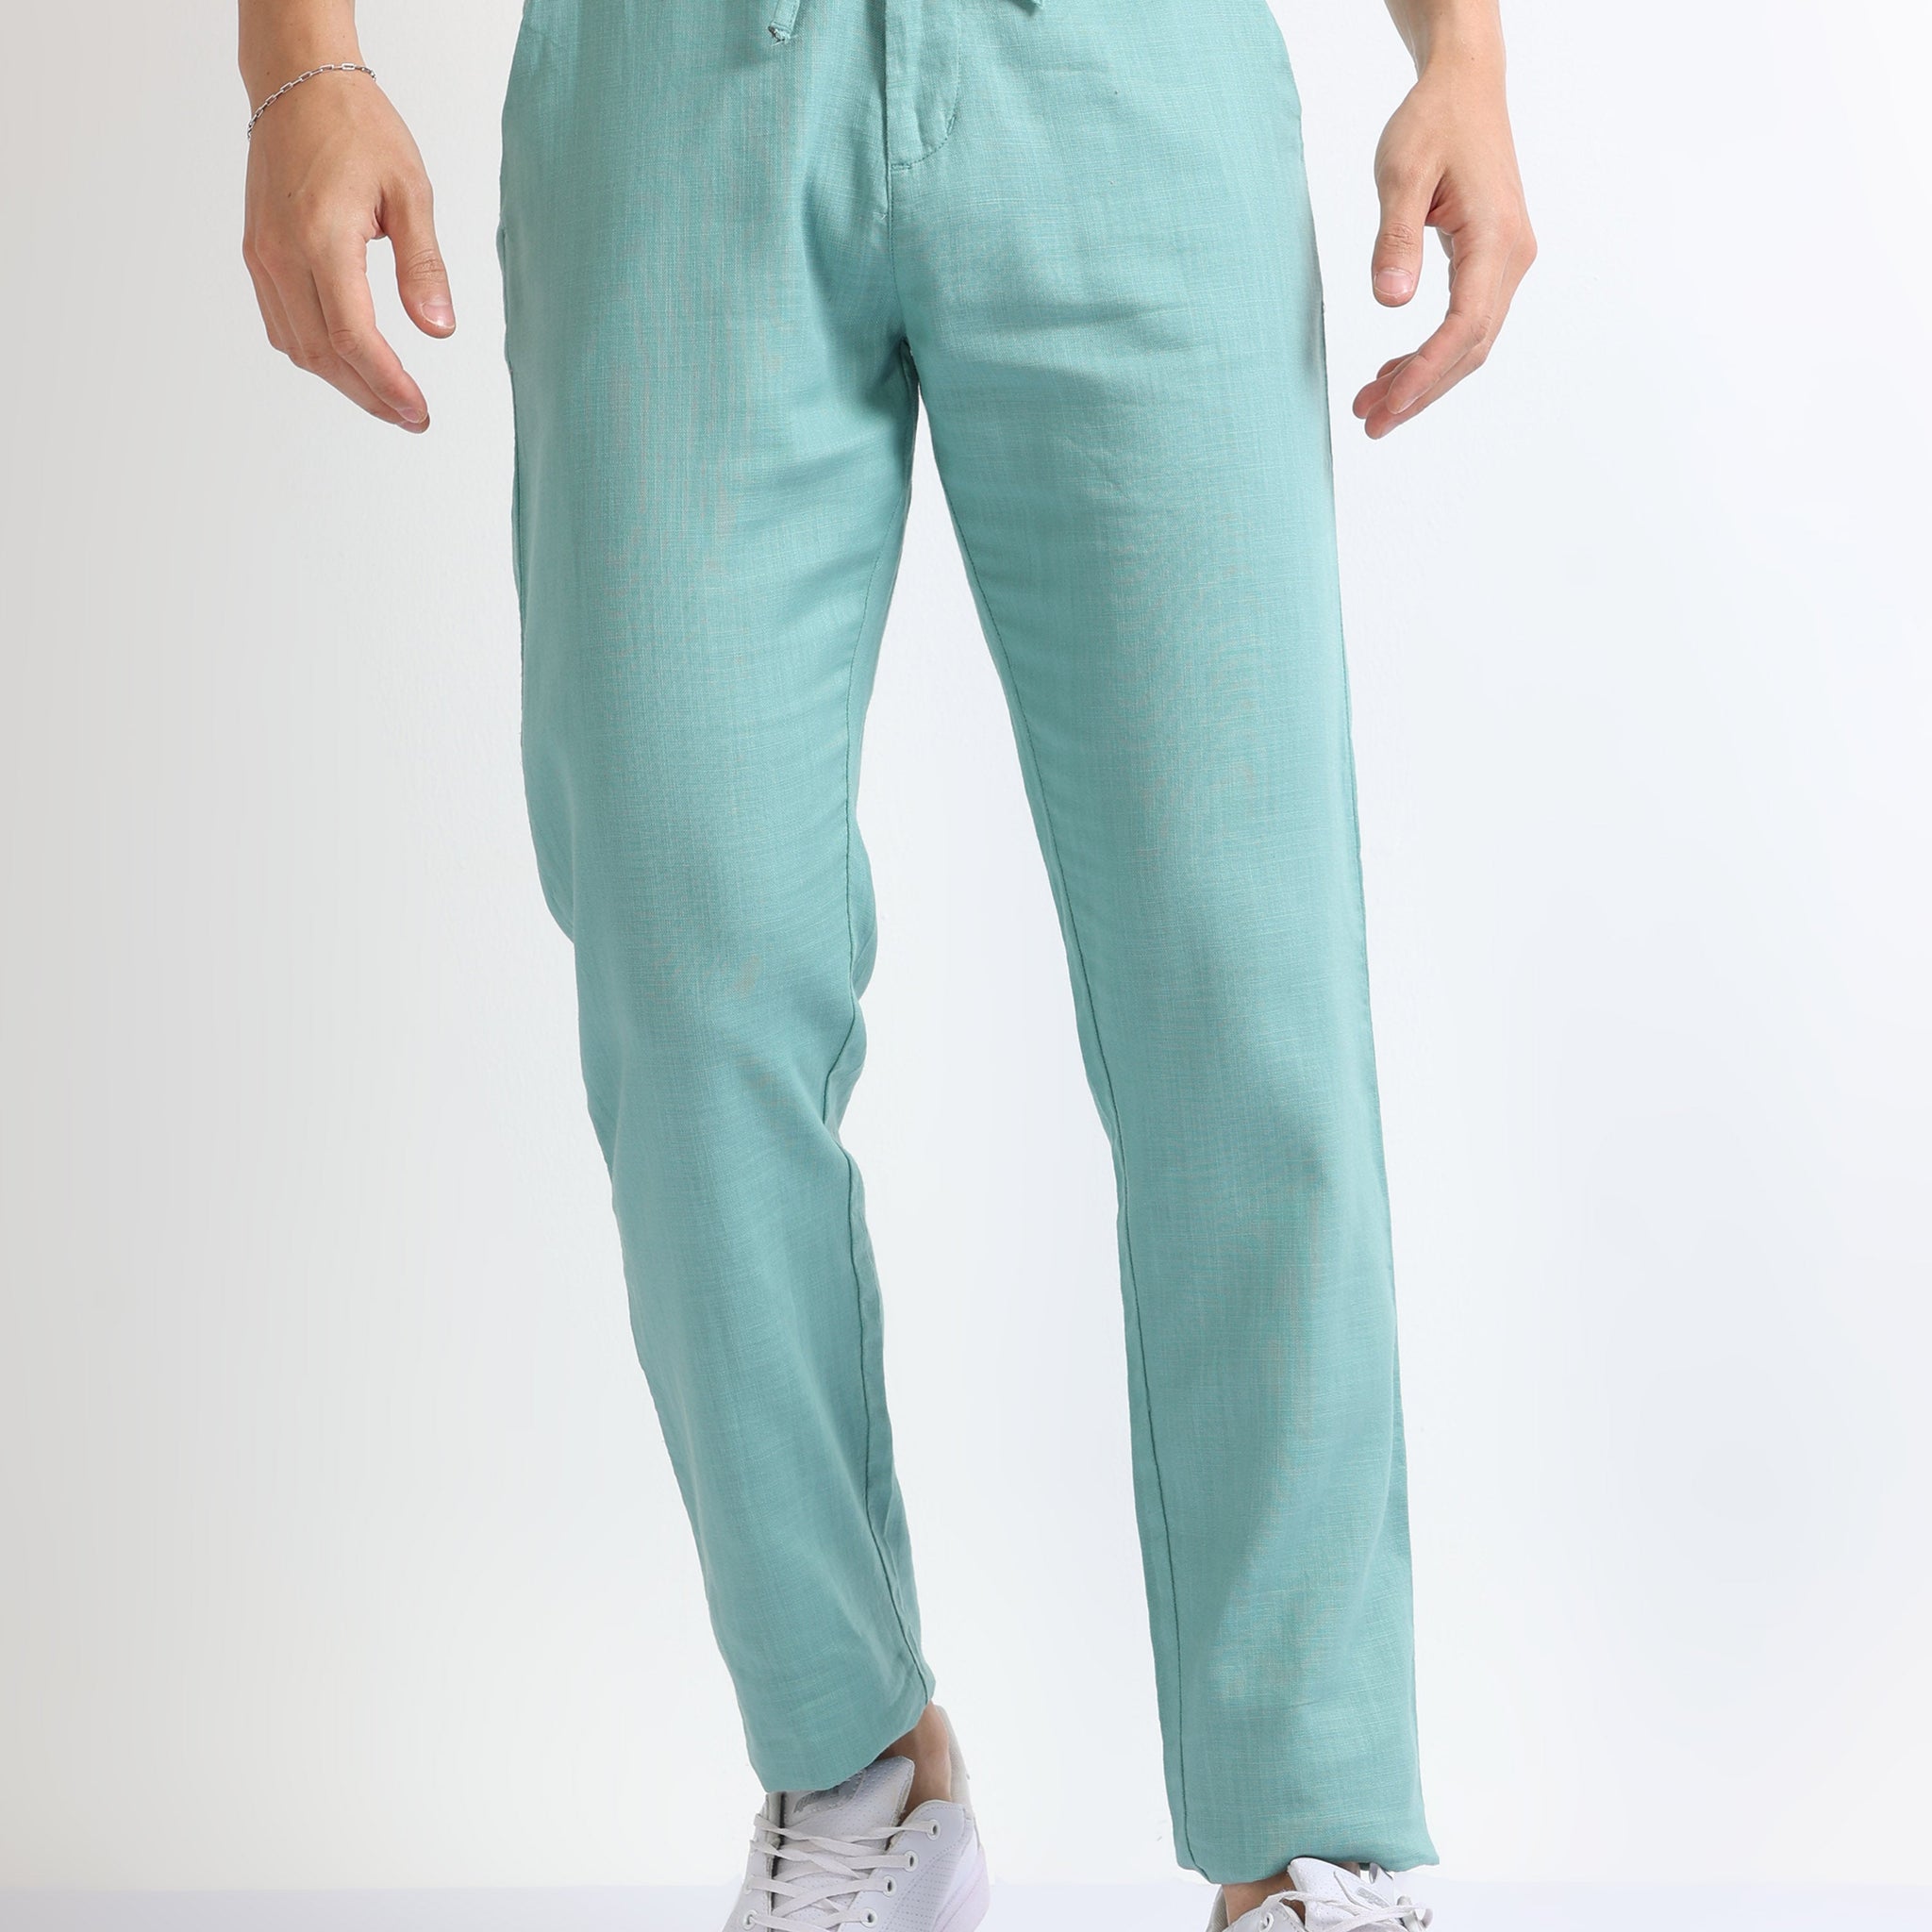 Green Men's Drawcod Linen Fashion Pant